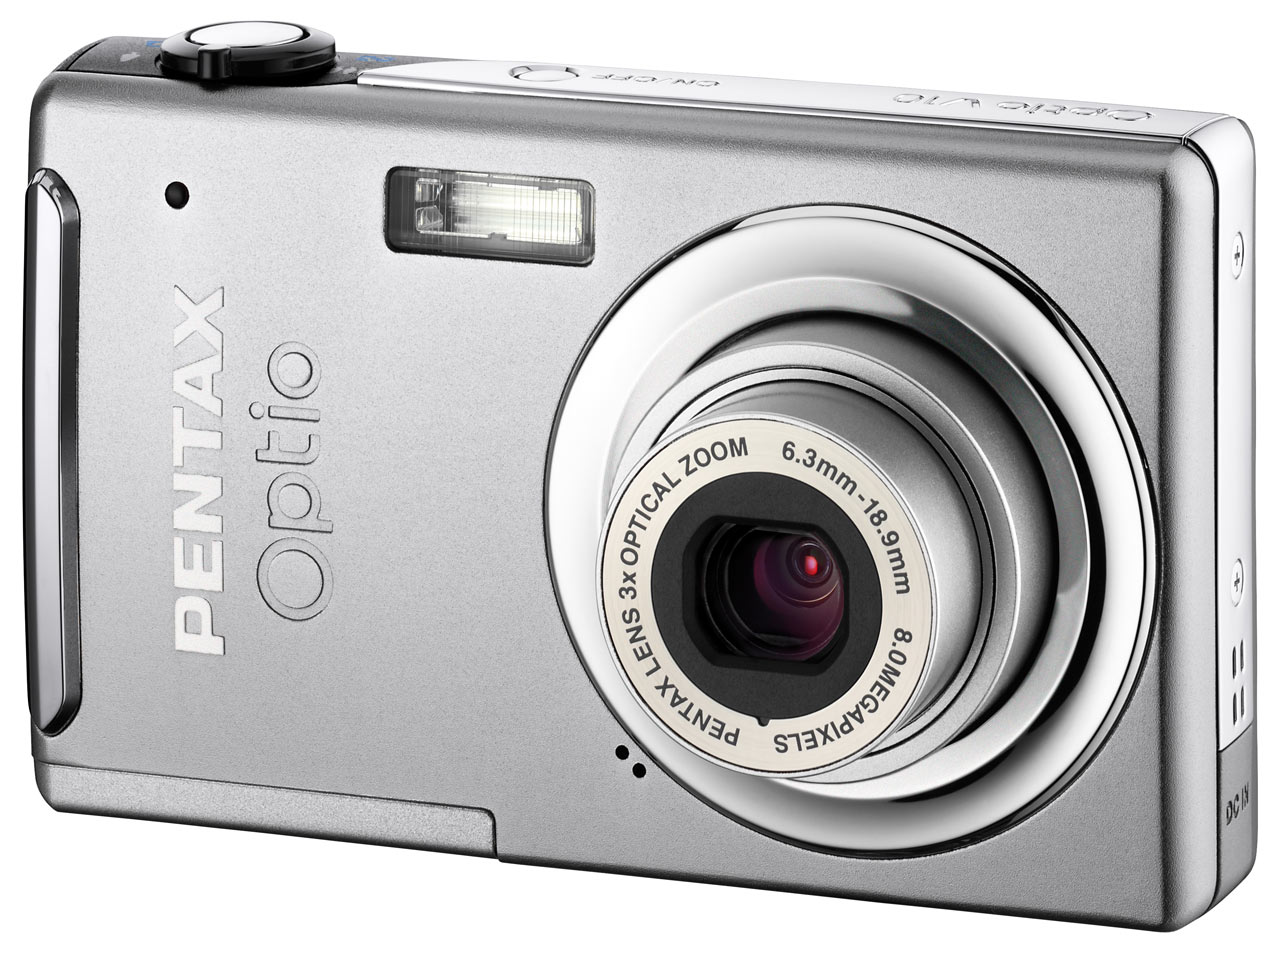 Pentax Optio V10 Digital Camera